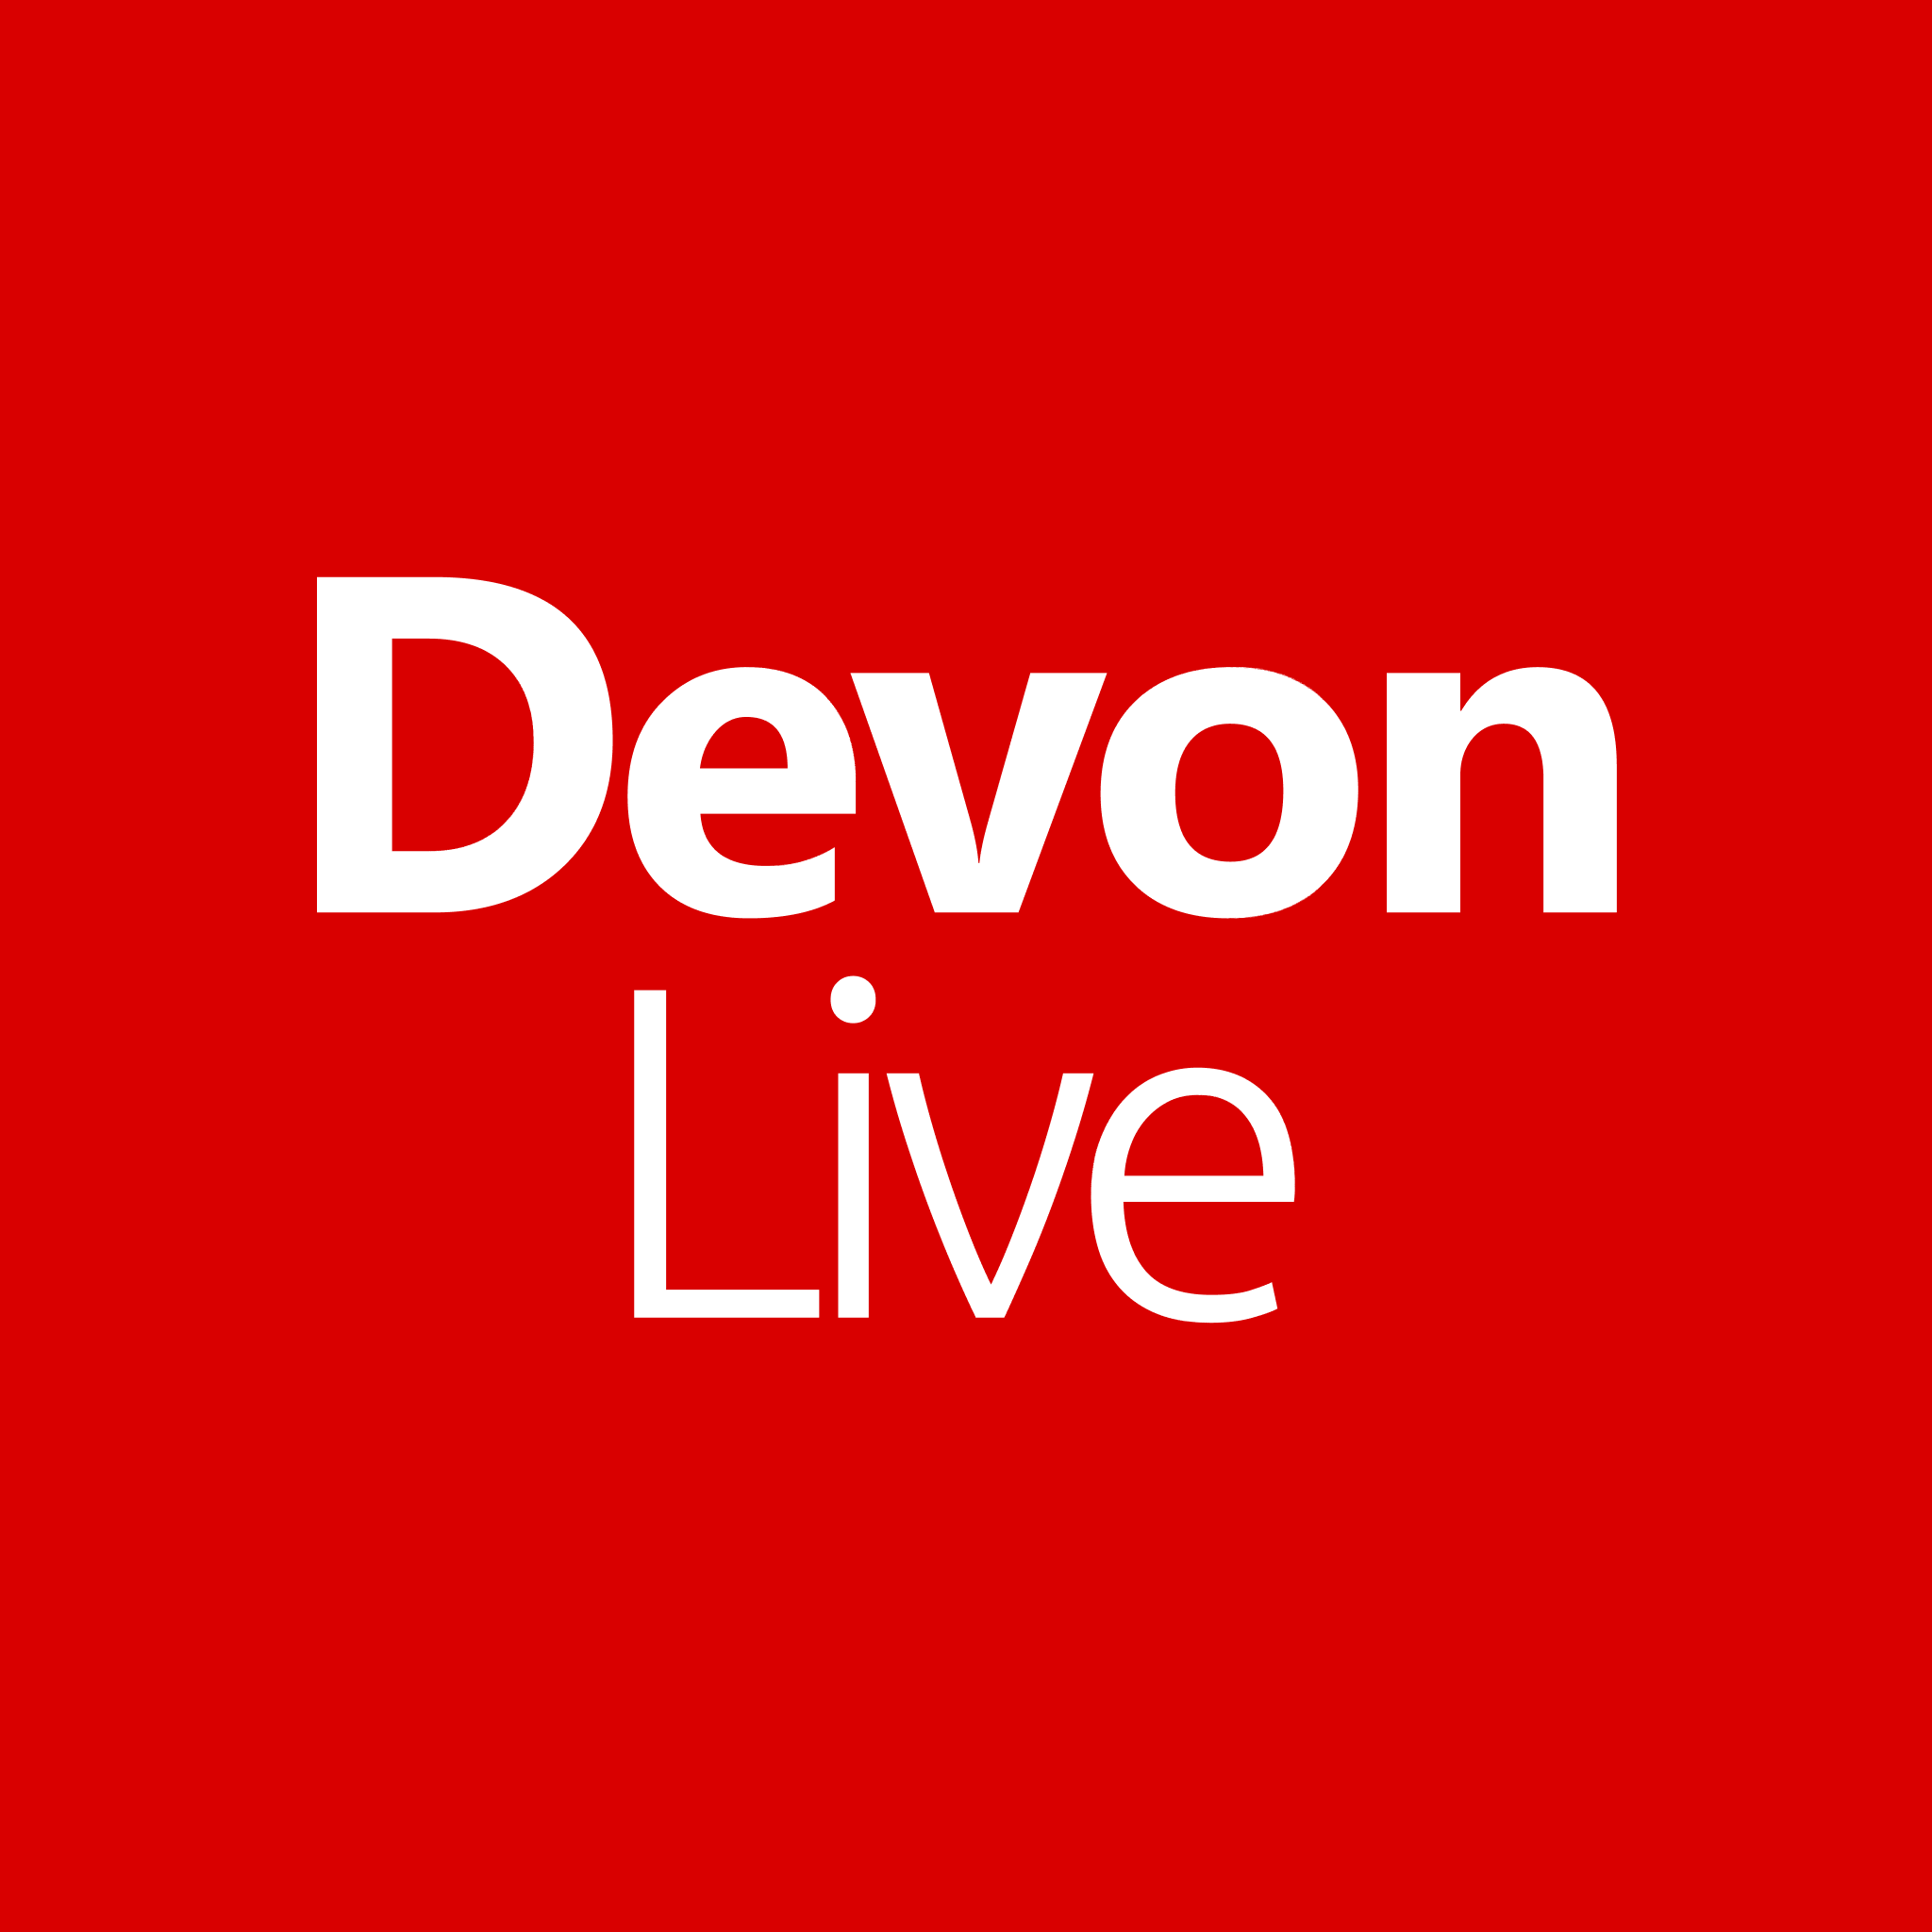 Avatar - Devon Live